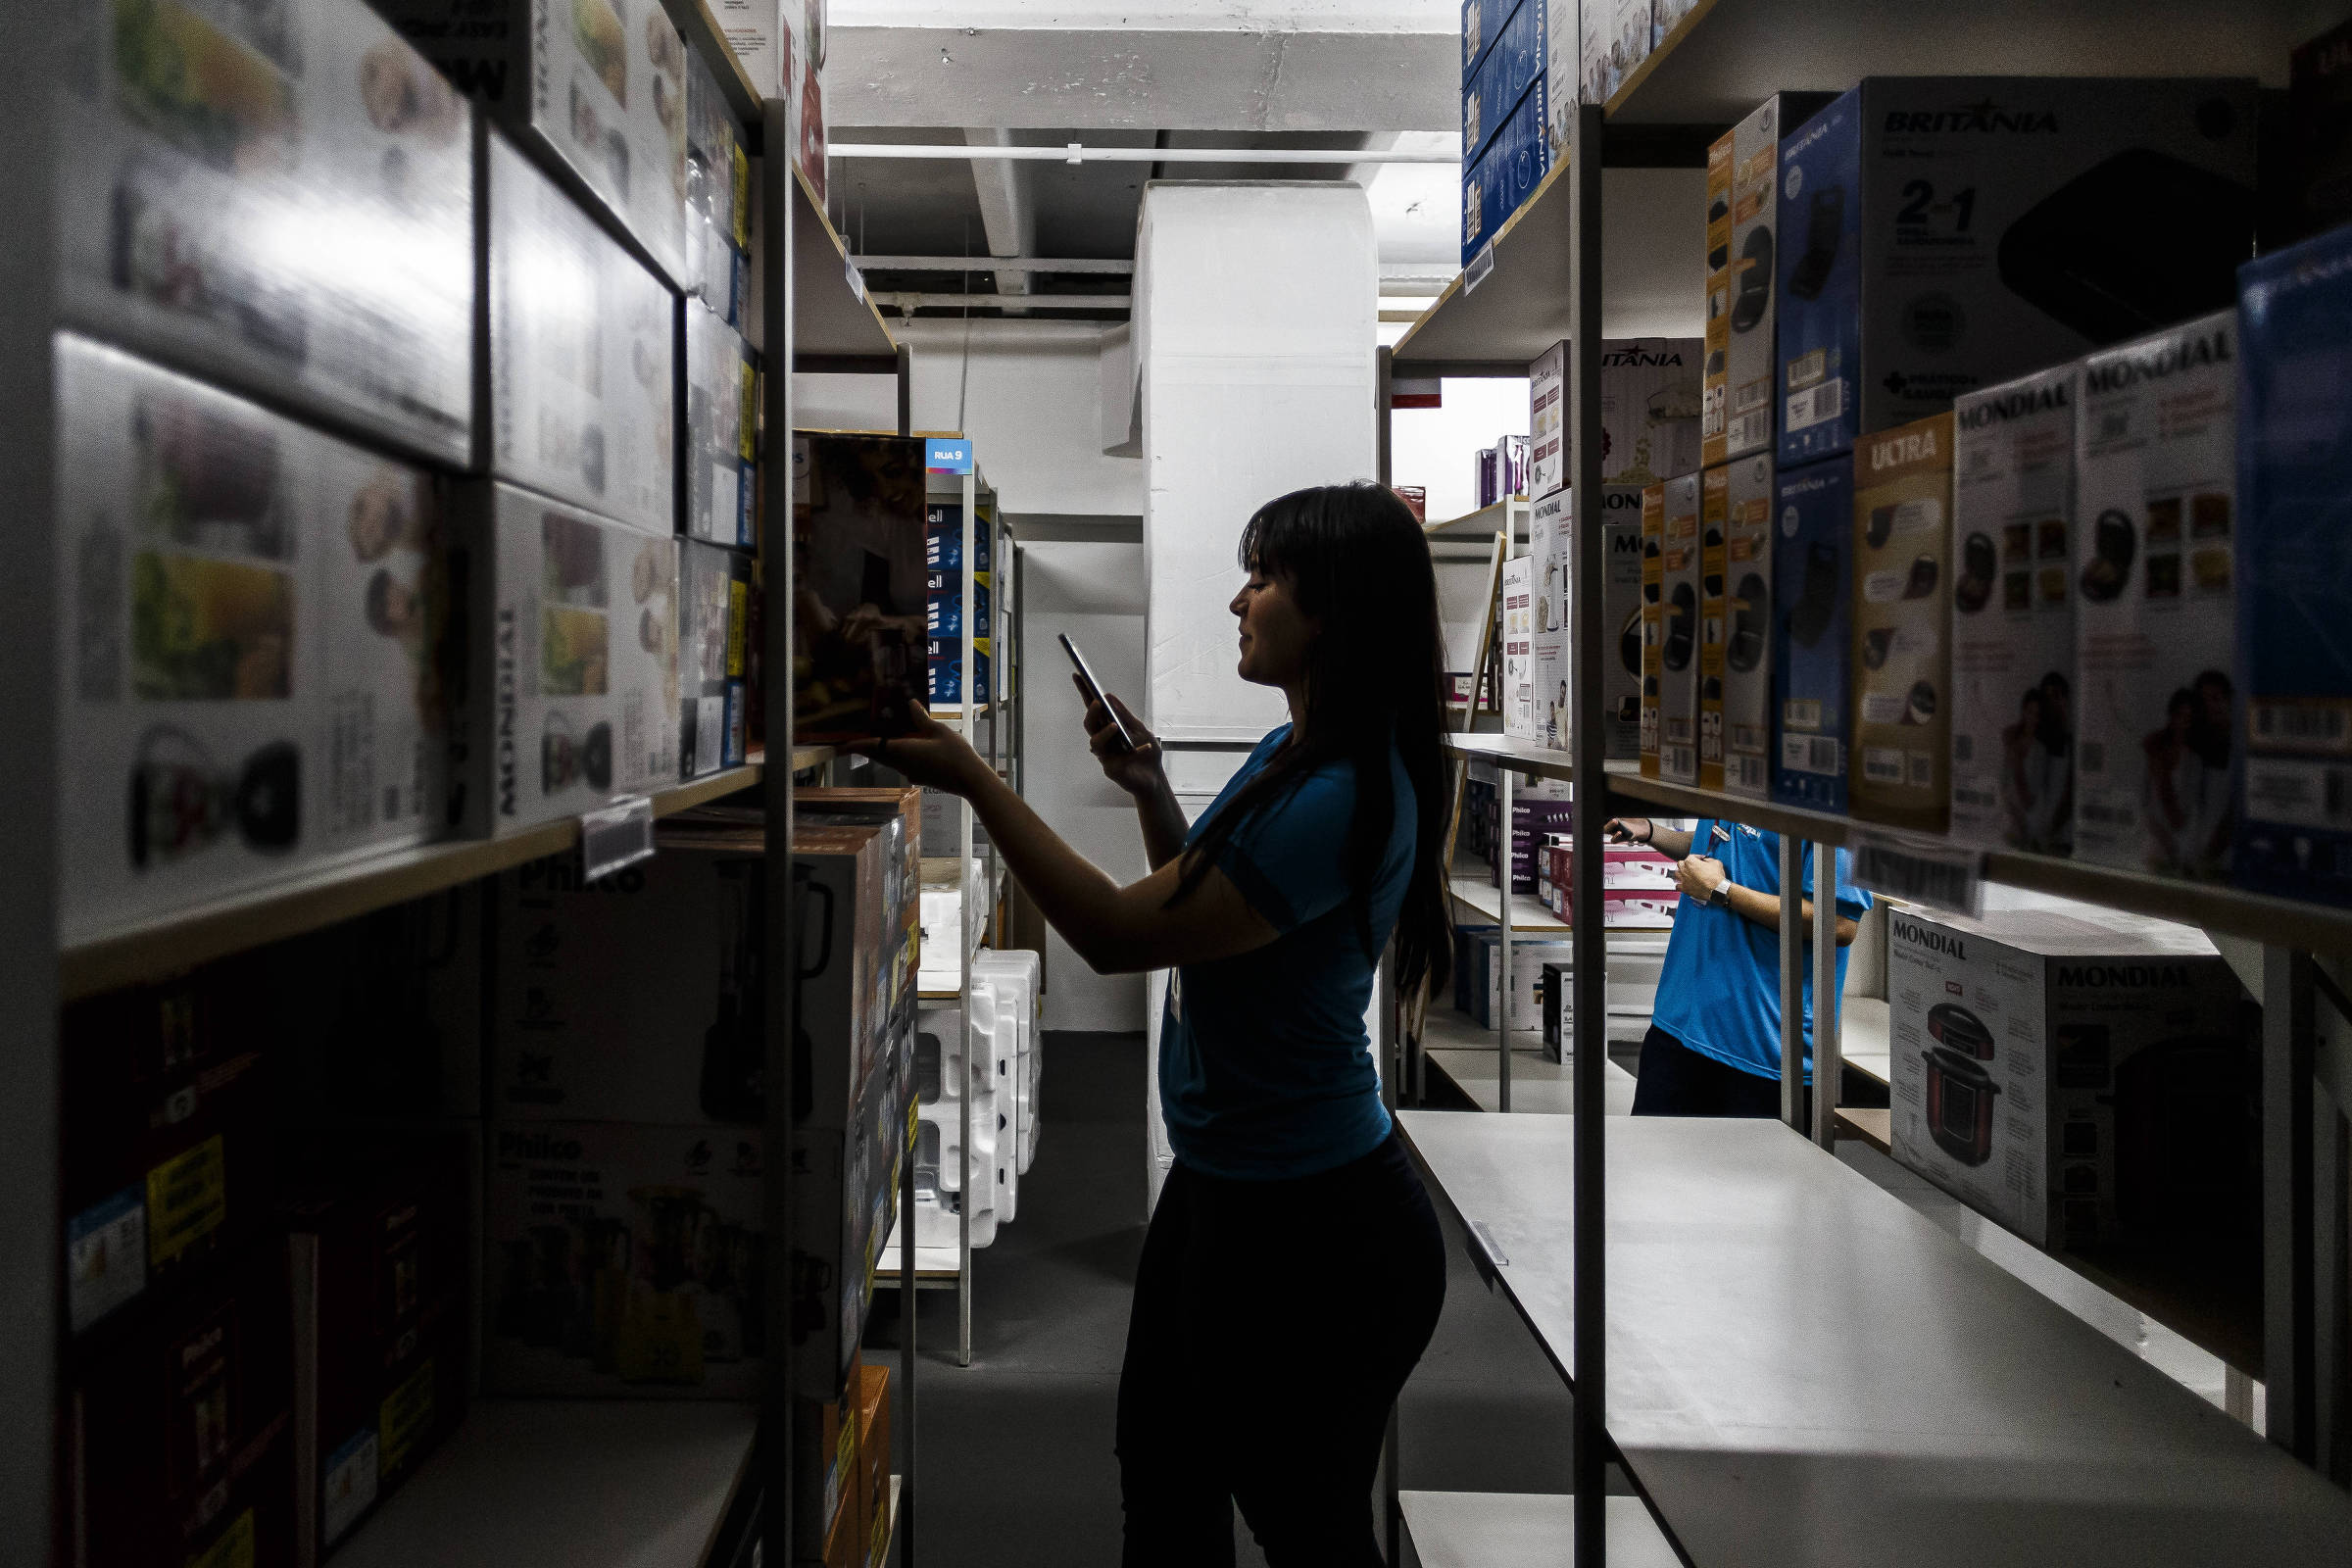 C&A encerra quatro lojas em Portugal - Comércio - Jornal de Negócios